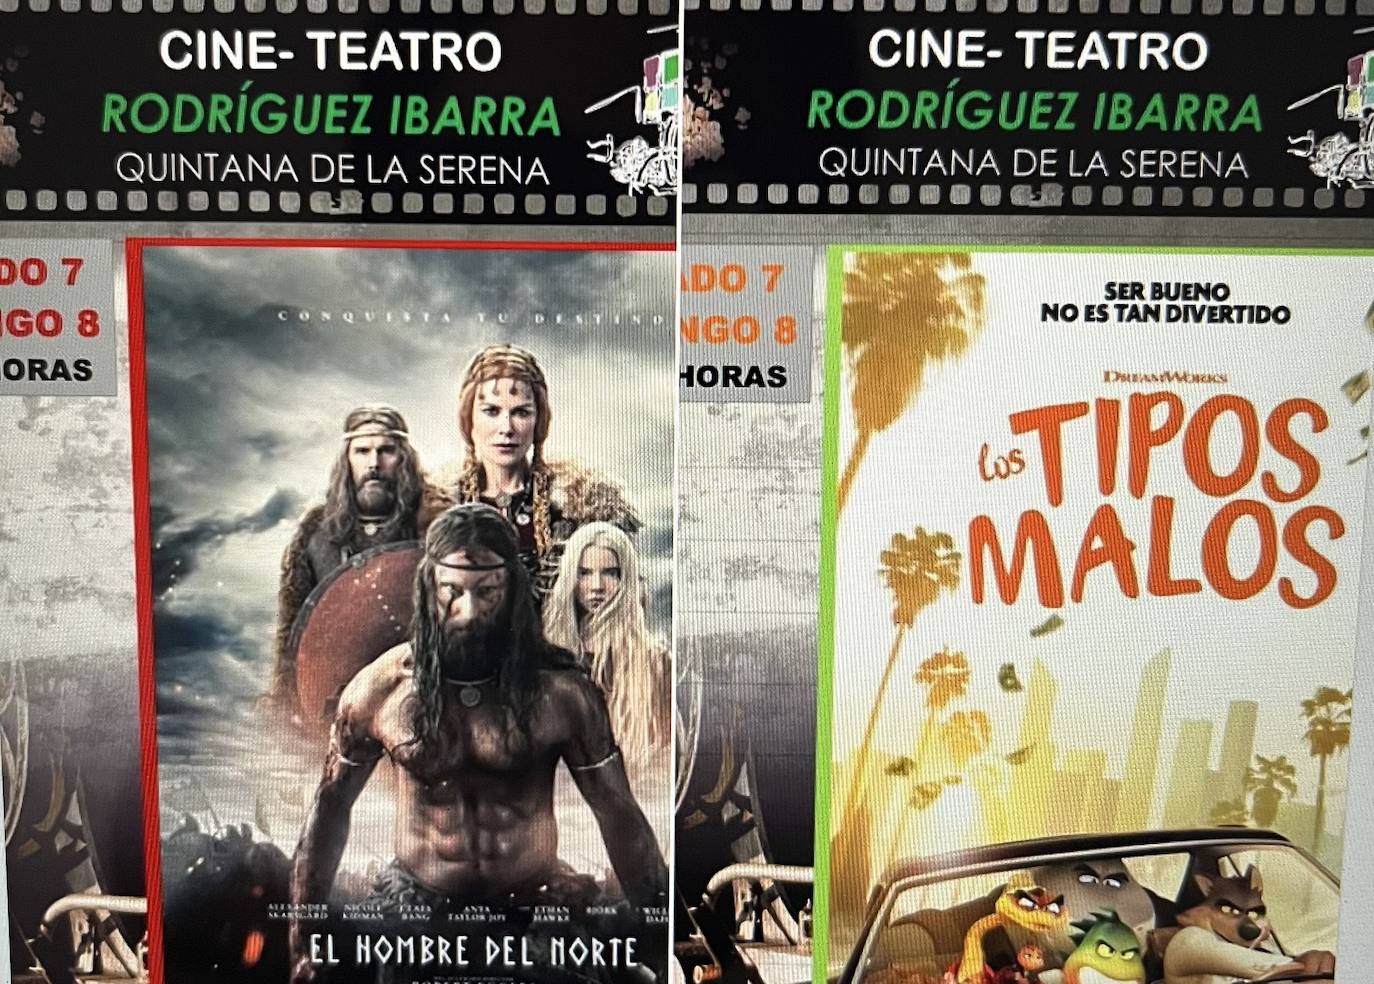 El cine regresa a la localidad con dos títulos de estreno